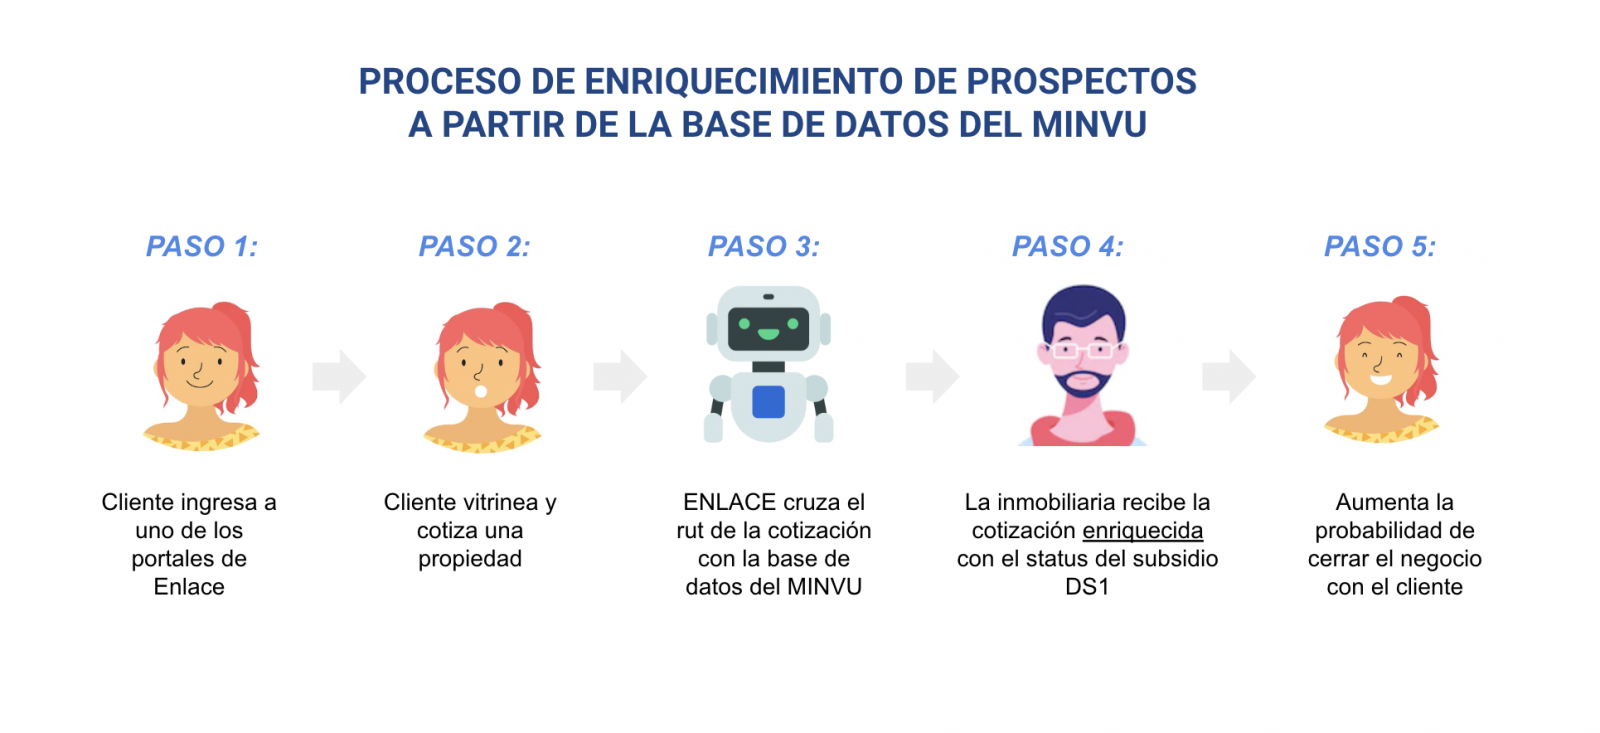 Proceso de enriquecimiento de prospectos a partir de la base datos del Minvu